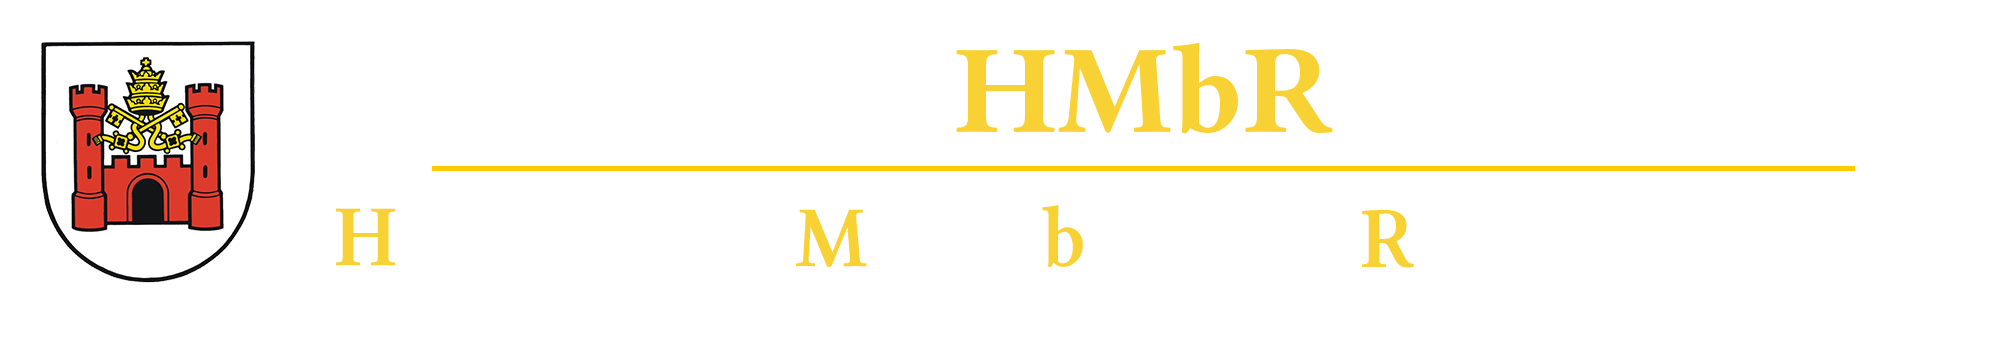 HMbR – Historischer Modellbahnhof Rothenburg/CH